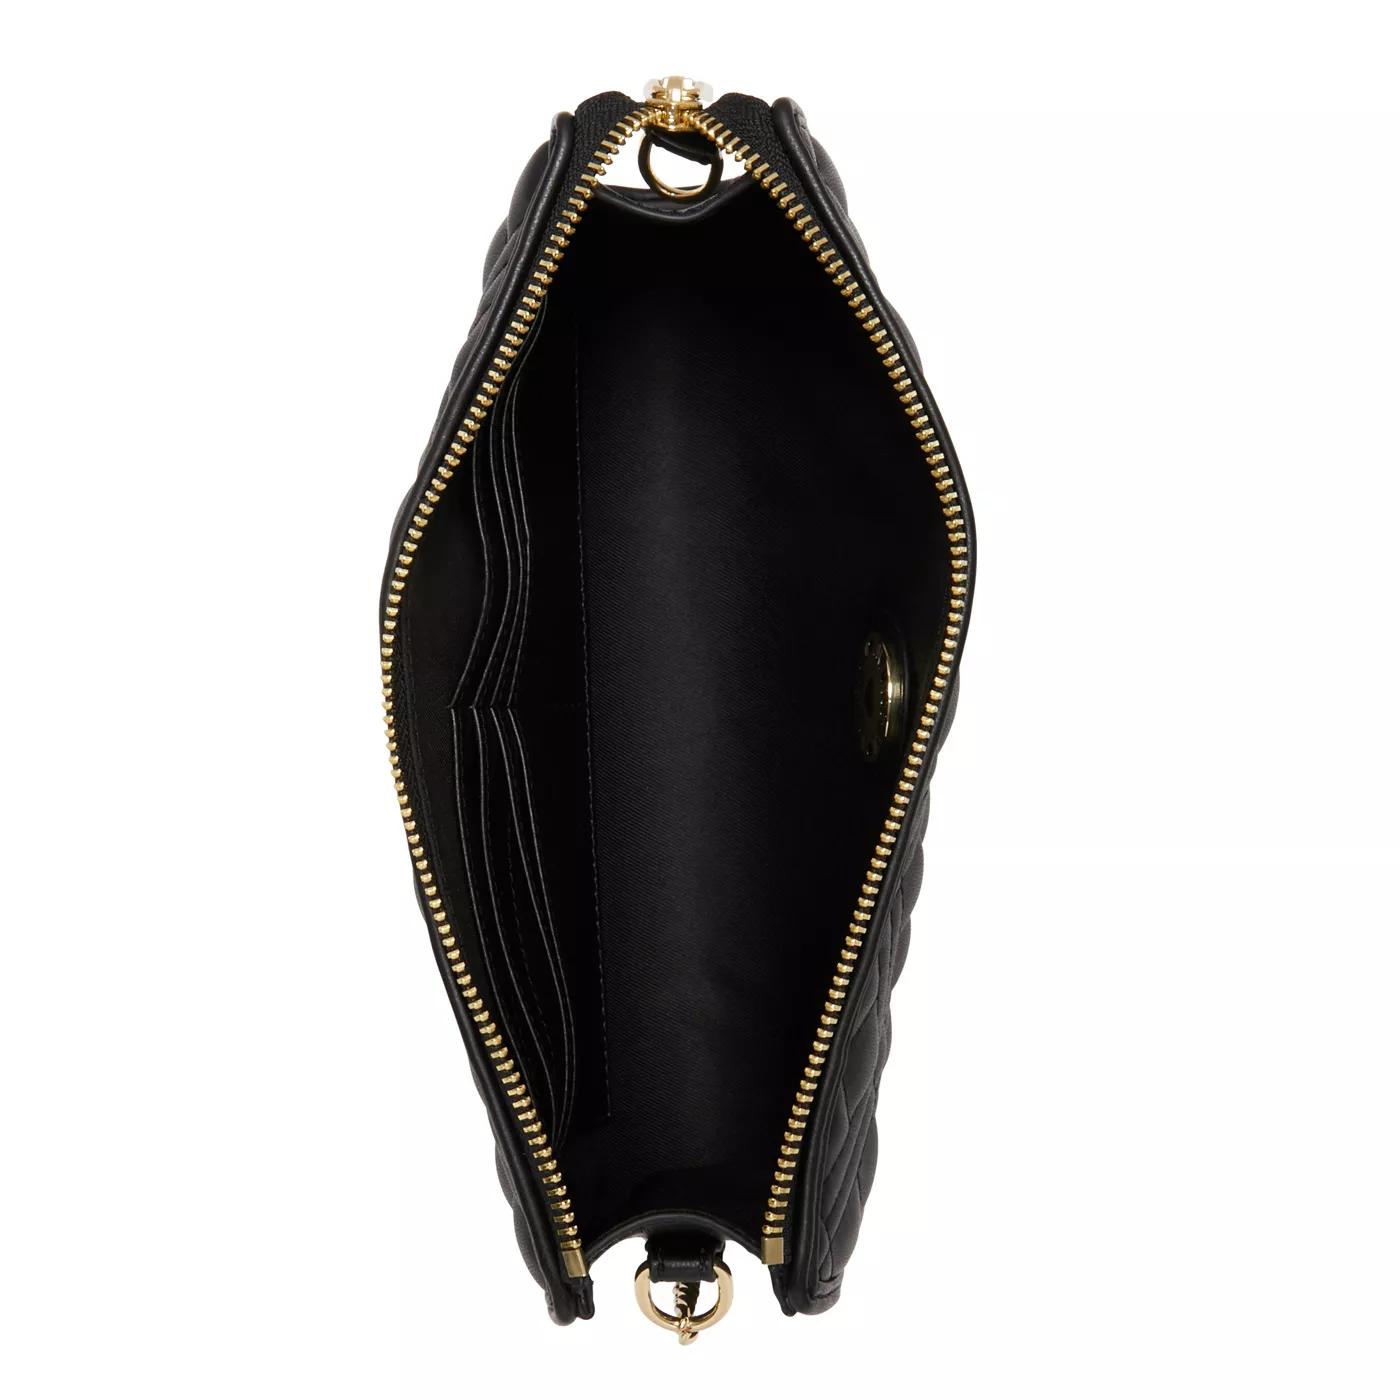 Love Moschino Crossbody bags Quilted Bag Schwarze Handtasche JC40 in zwart